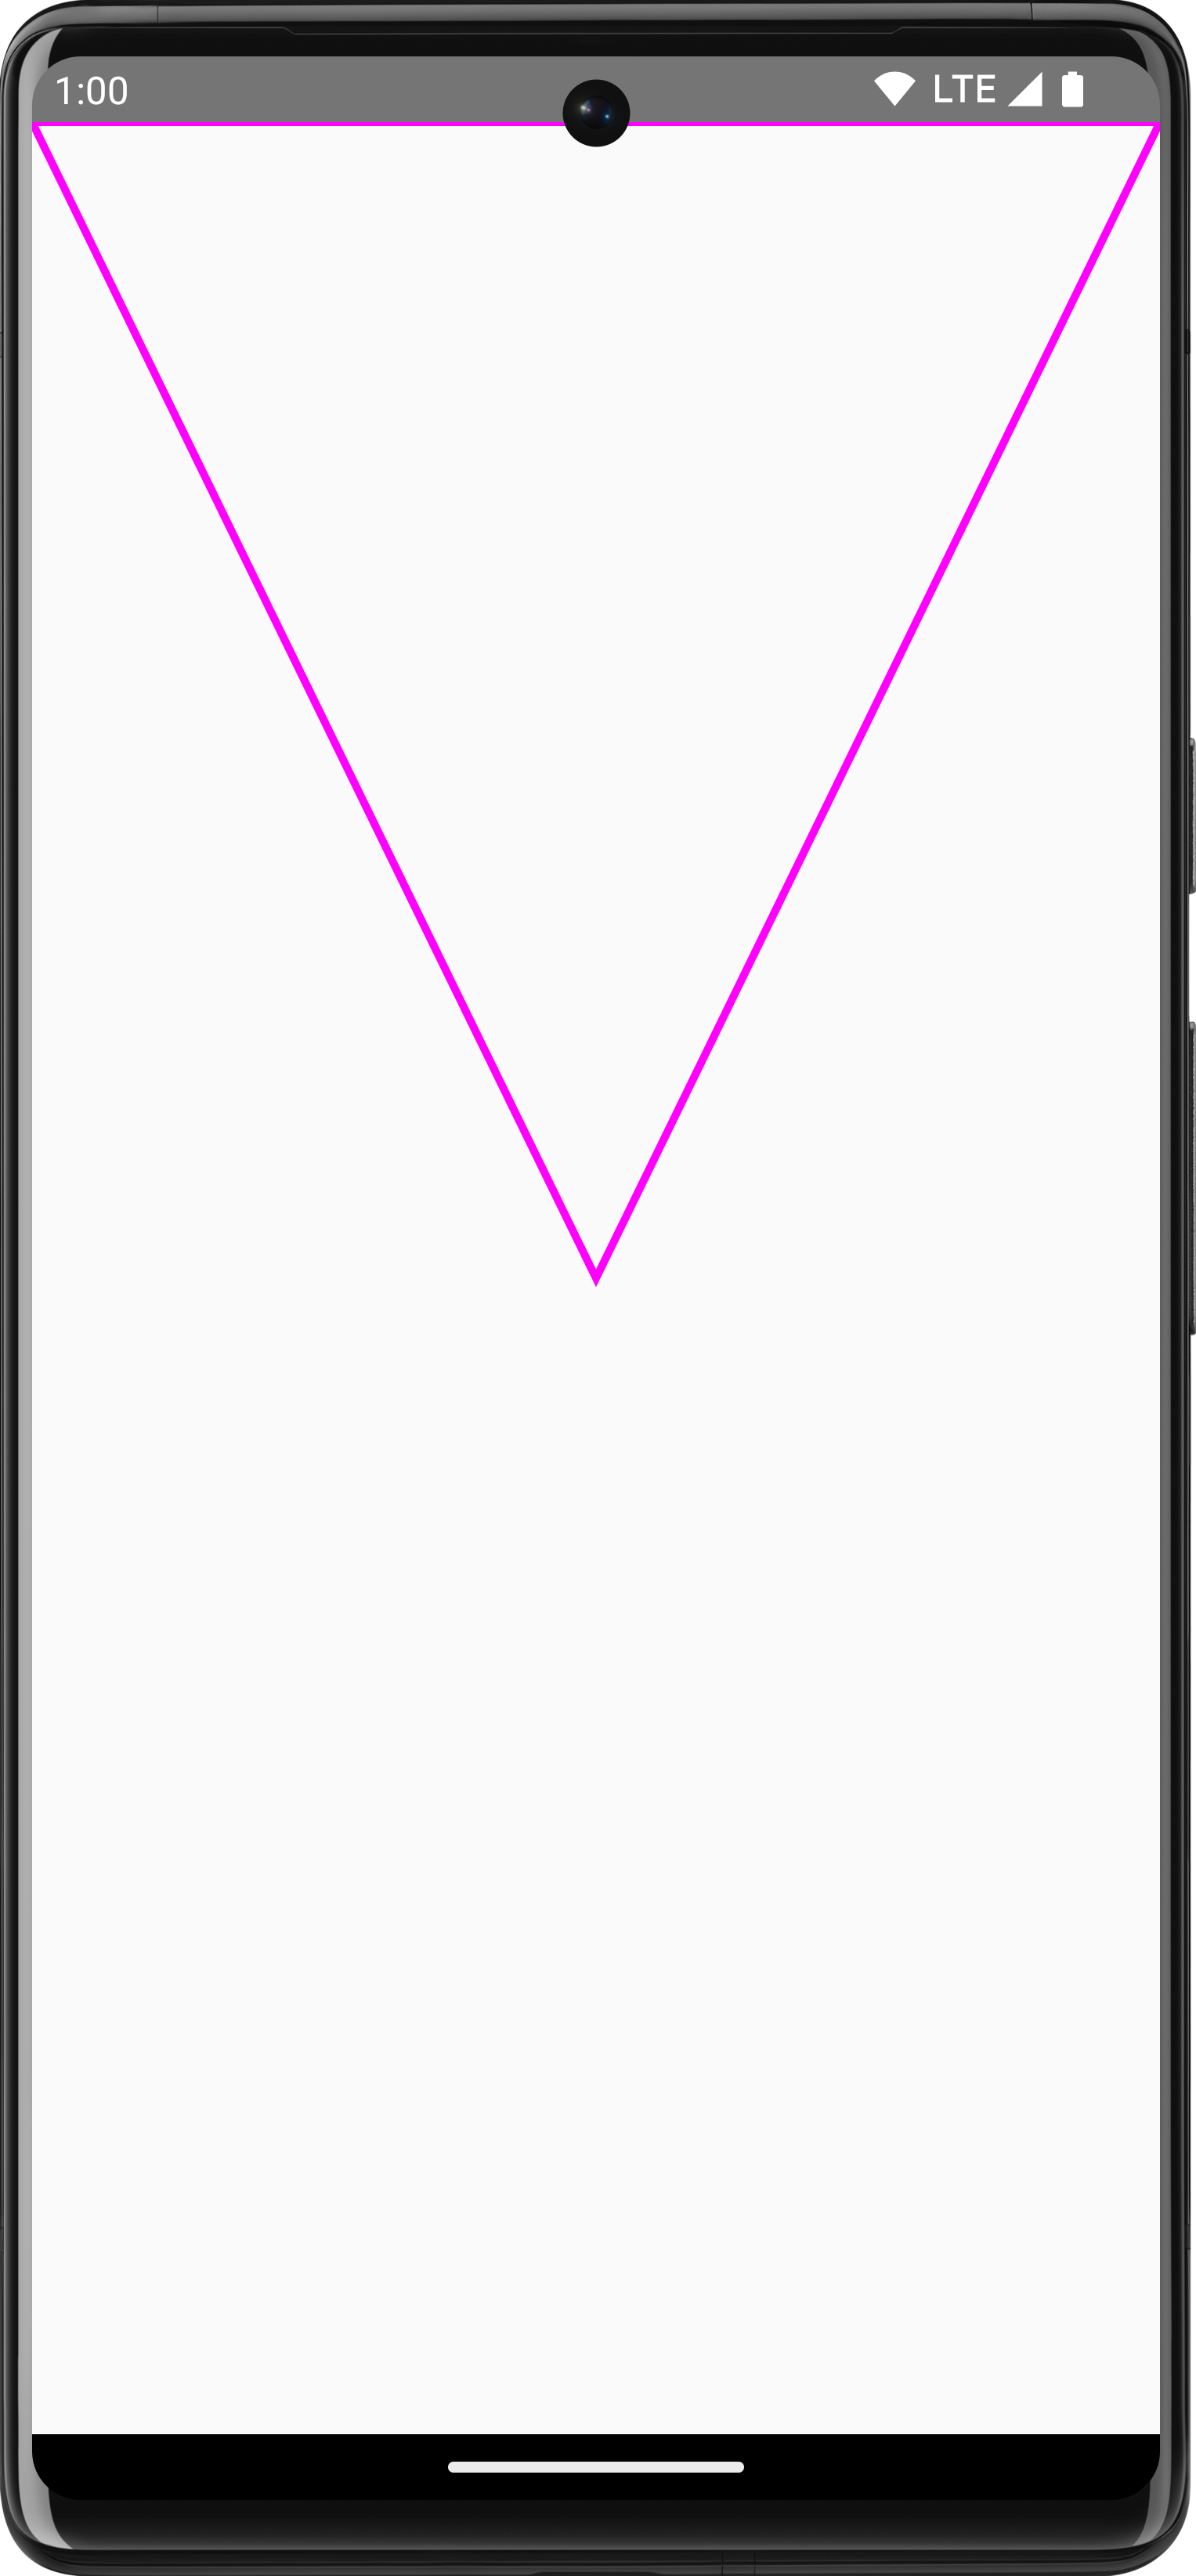 مثلث مسار أرجواني مقلوب مرسوم في علامة التبويب Compose